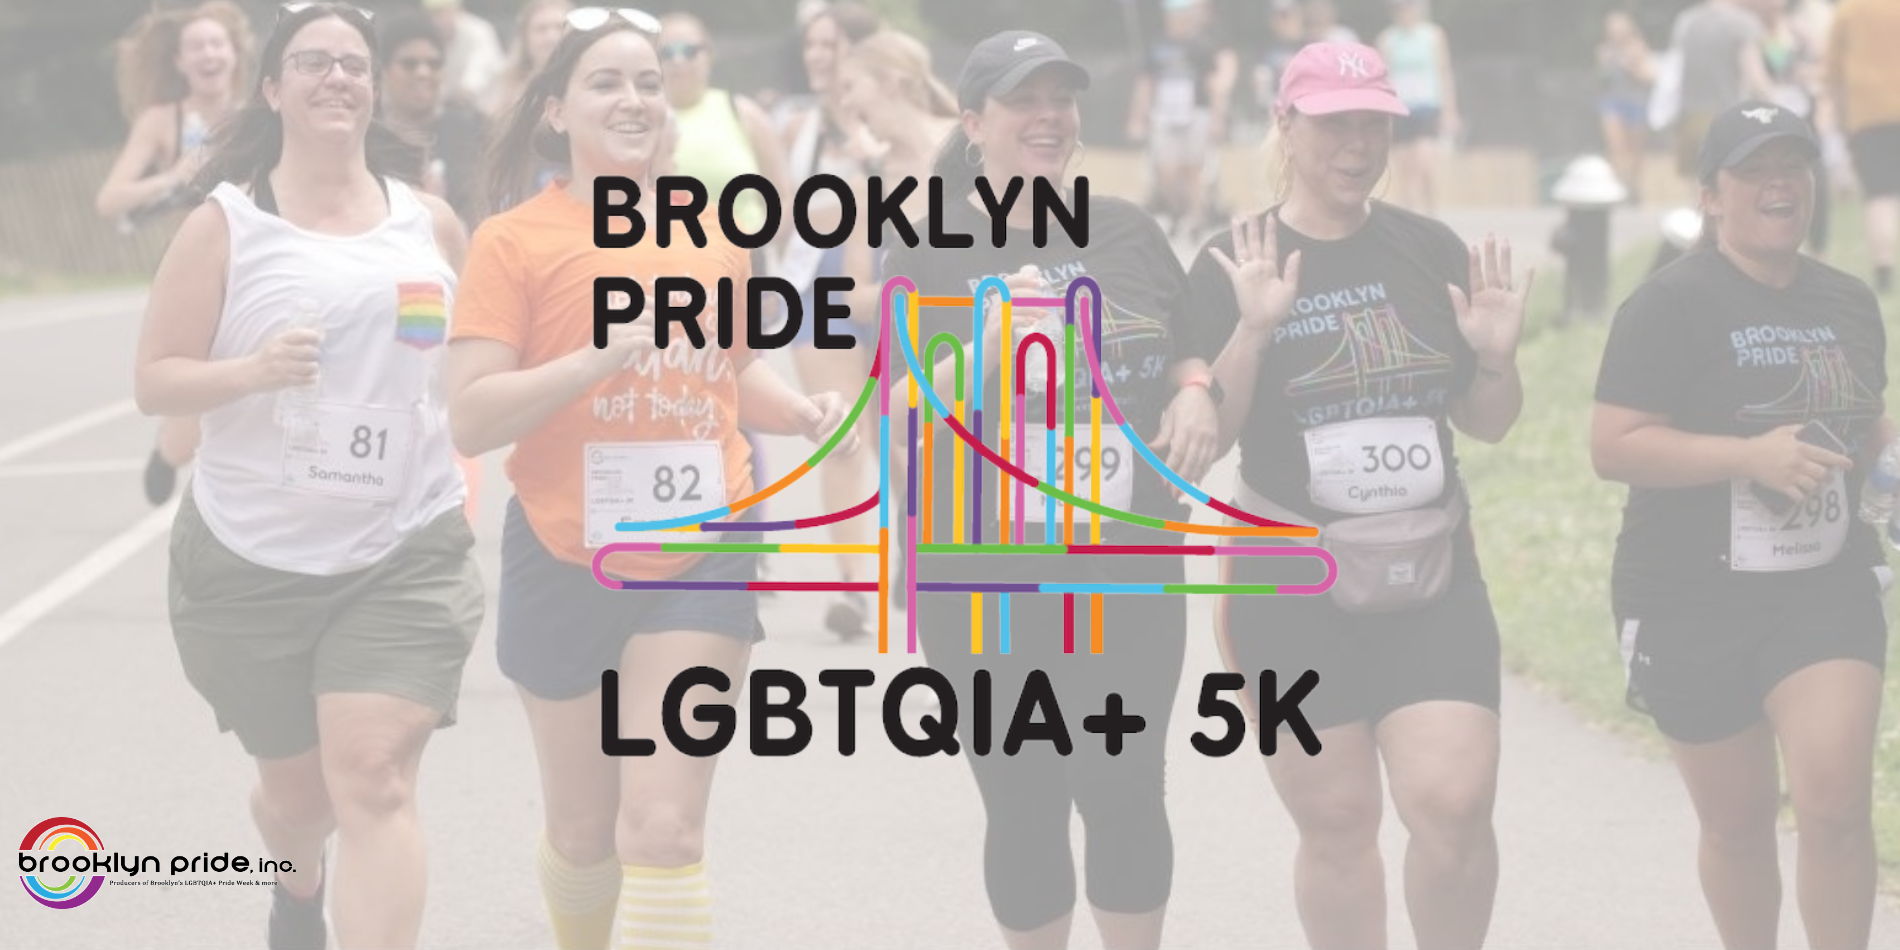 Brooklyn Pride LGBTQIA+ 5K Run/Walk promotional image